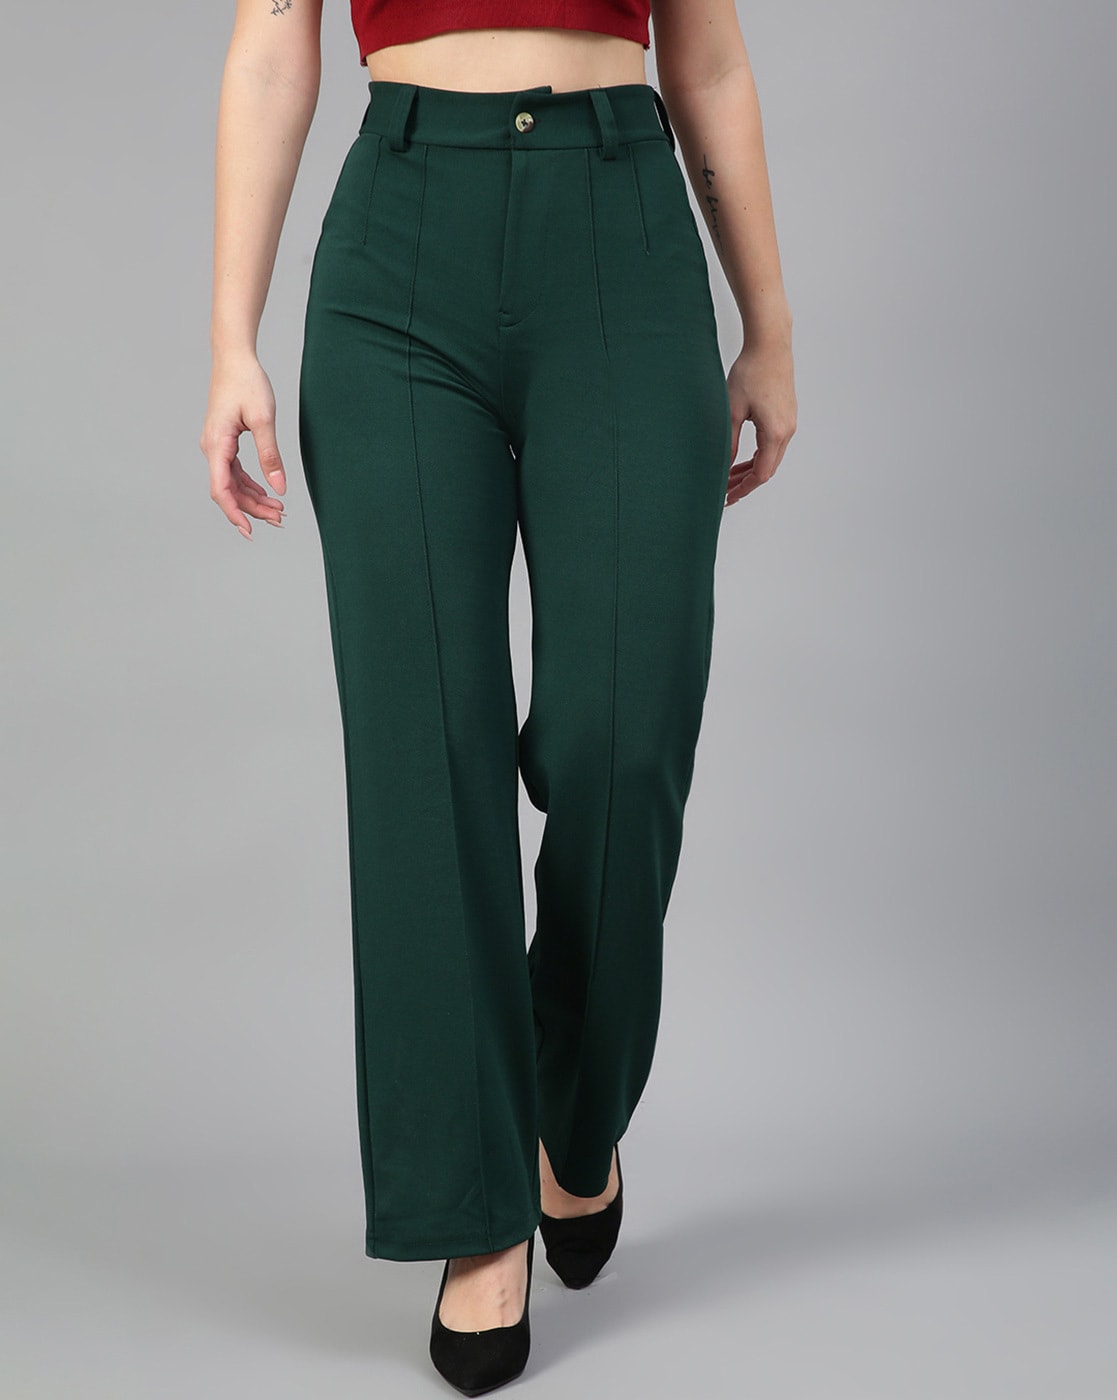 Buy Green Trousers  Pants for Women by YLONDON Online  Ajiocom